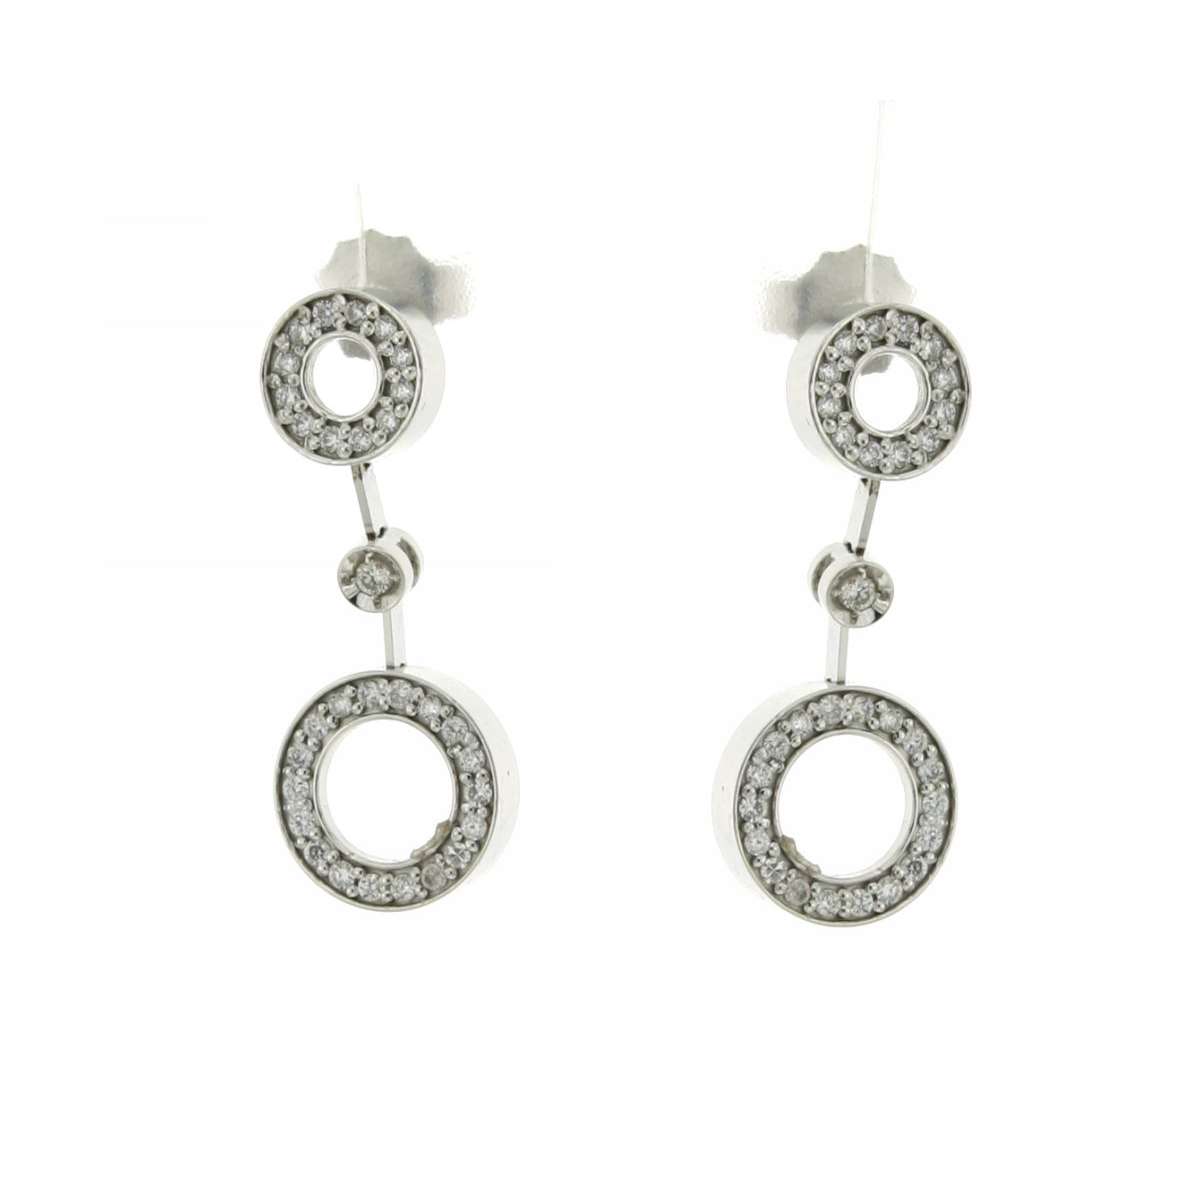 Dangling earrings 0.34 carats diamonds G-VS1